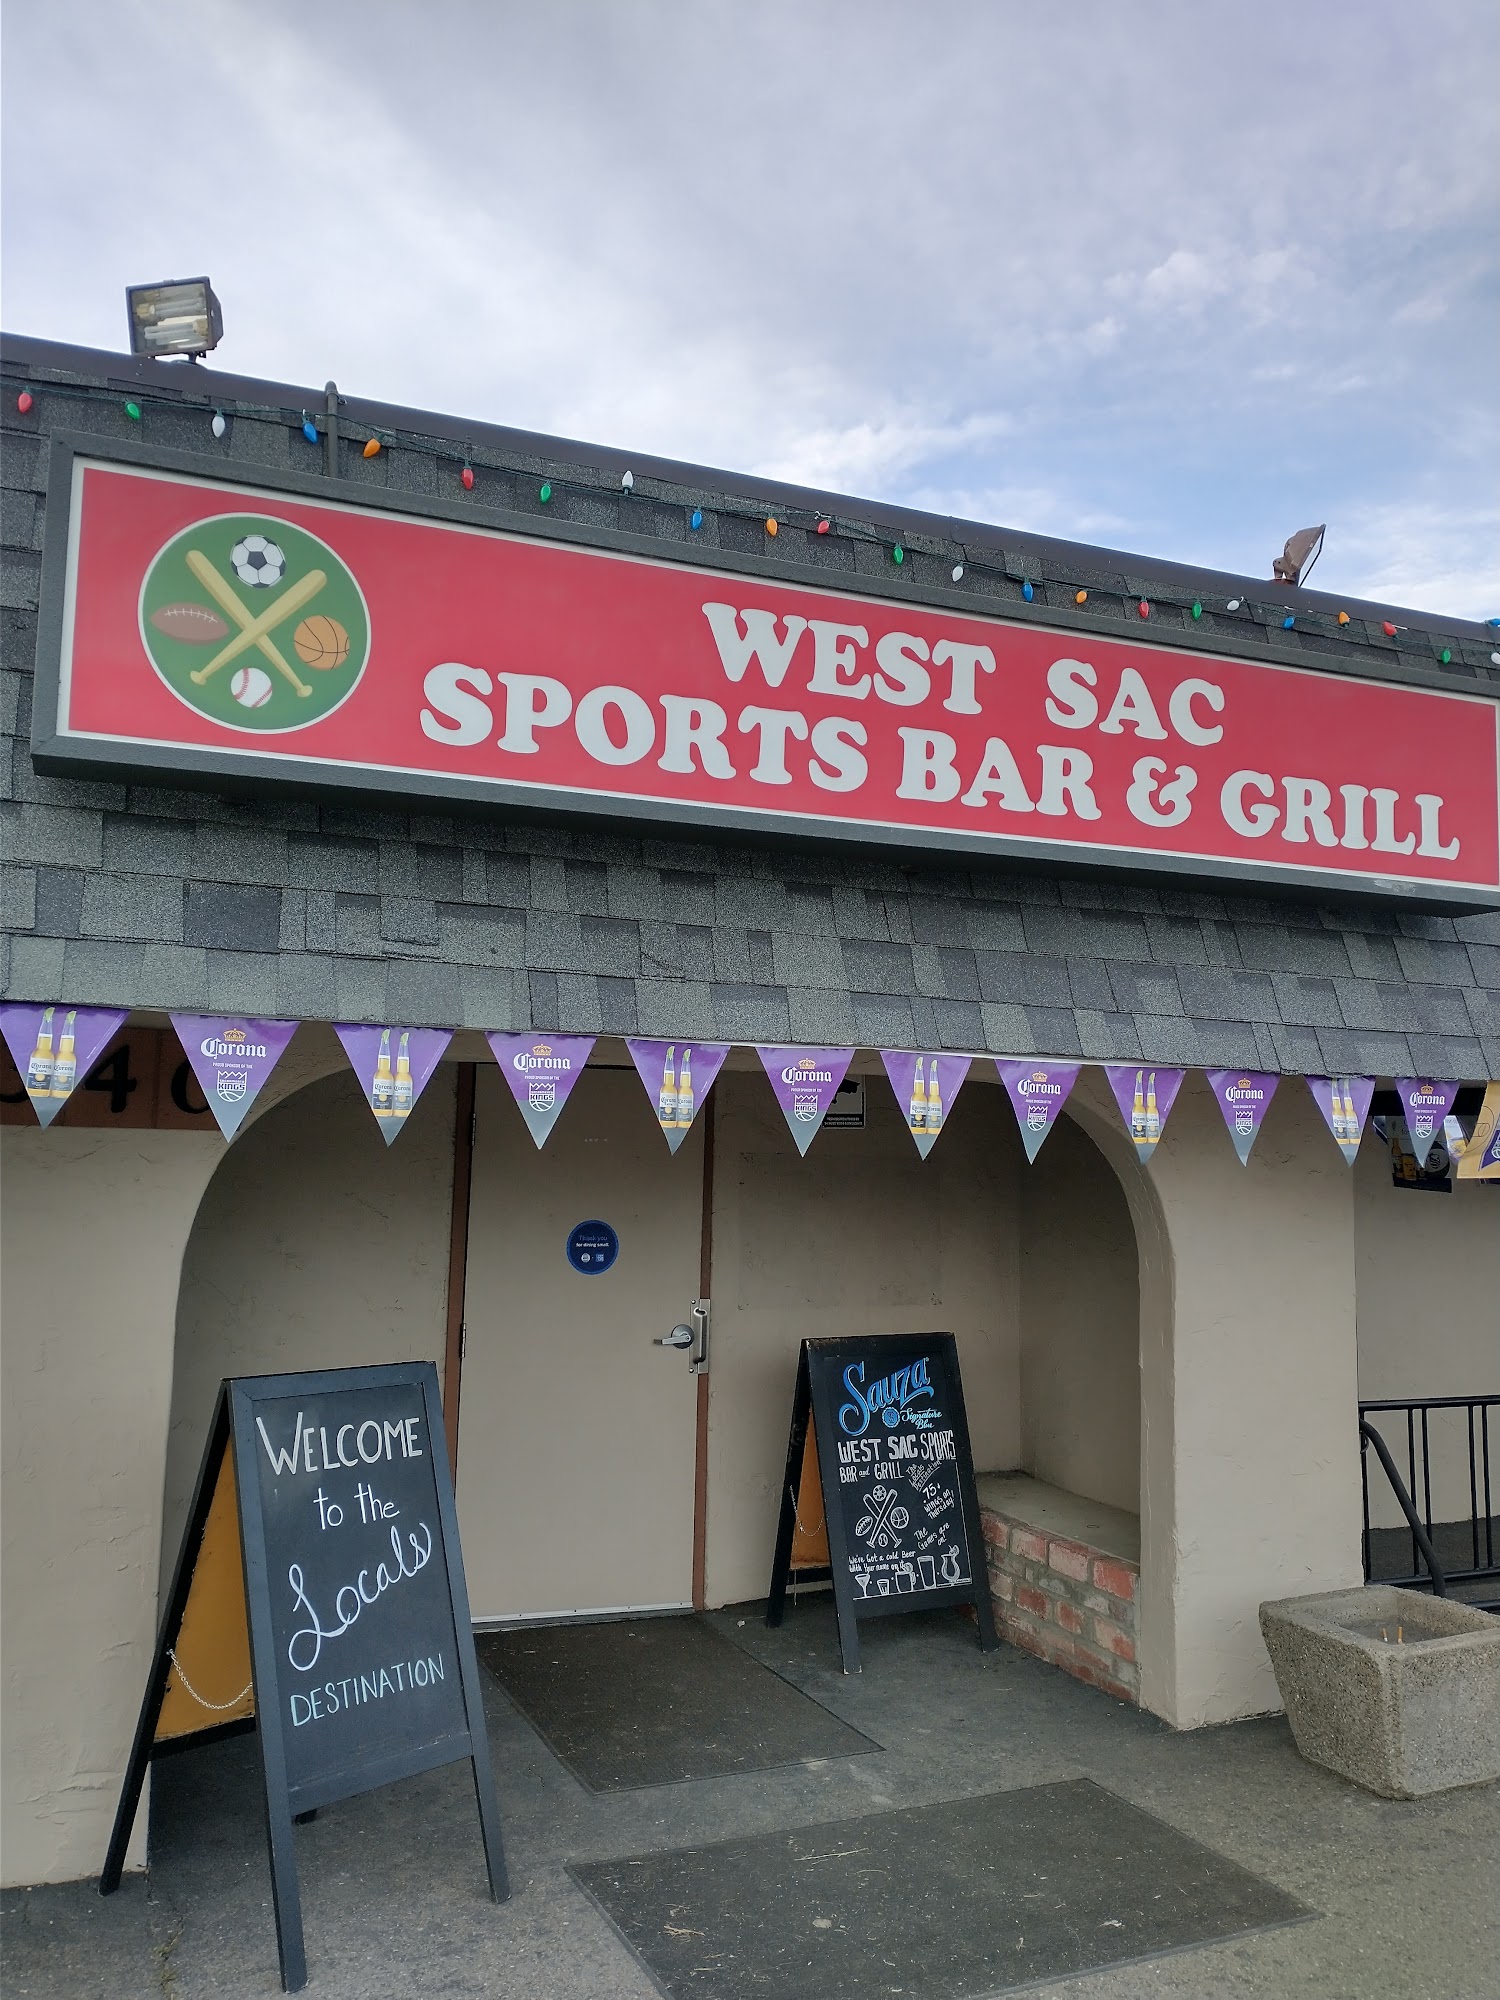 West Sac Sports Bar & Grill